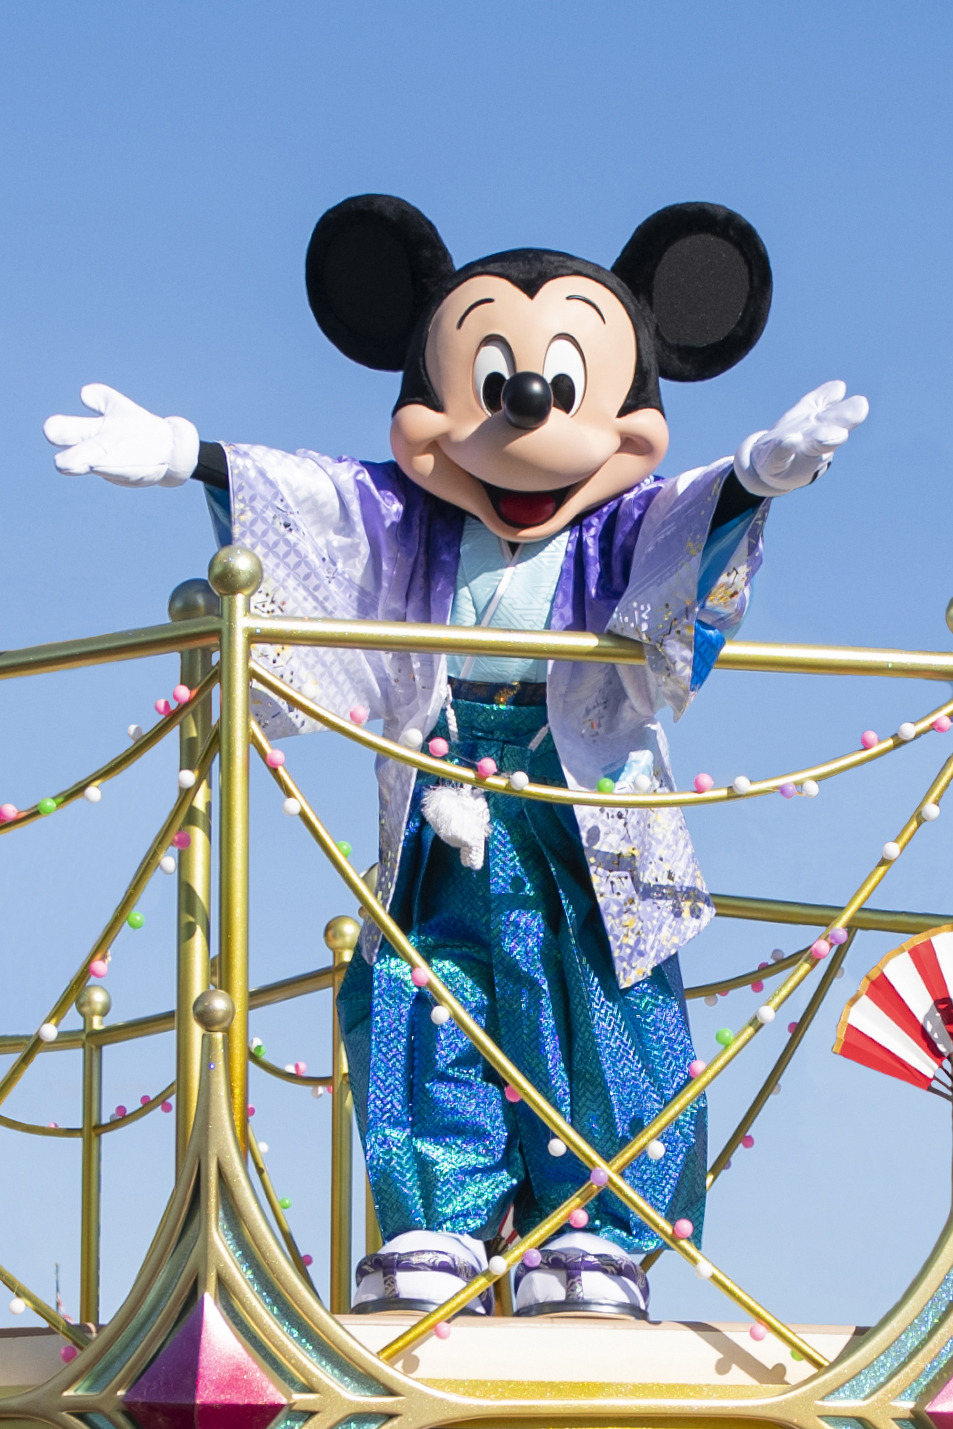 お正月は和服姿のミッキーマウスやディズニーの仲間たちがお出迎え 東京ディズニーランド シー Rbb Today